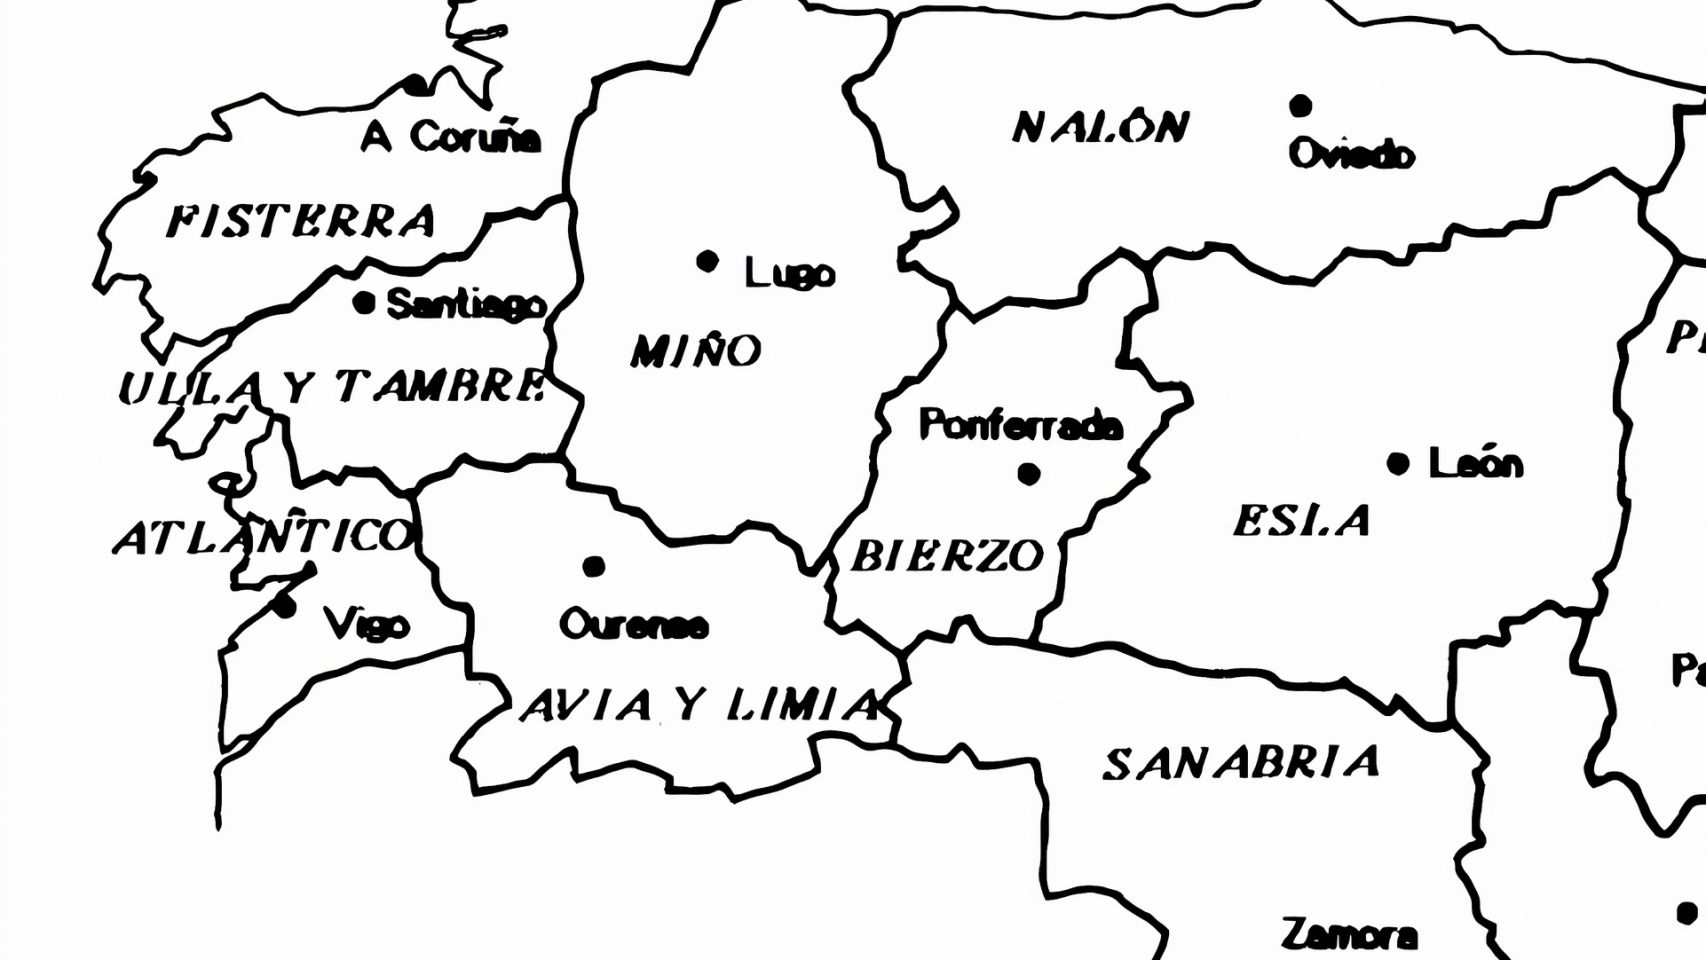 Distribución provincial de Galicia según el proyecto de 1842 de Fermín Caballero 